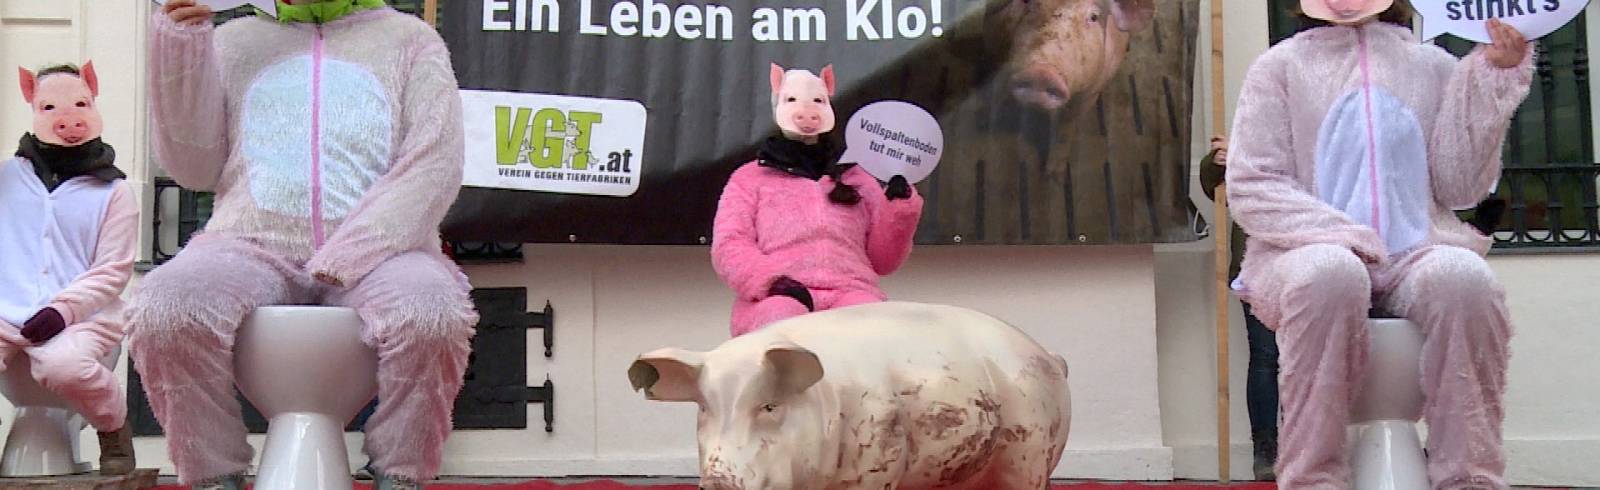 Schweinehaltung: "Ein Leben auf dem Klo"